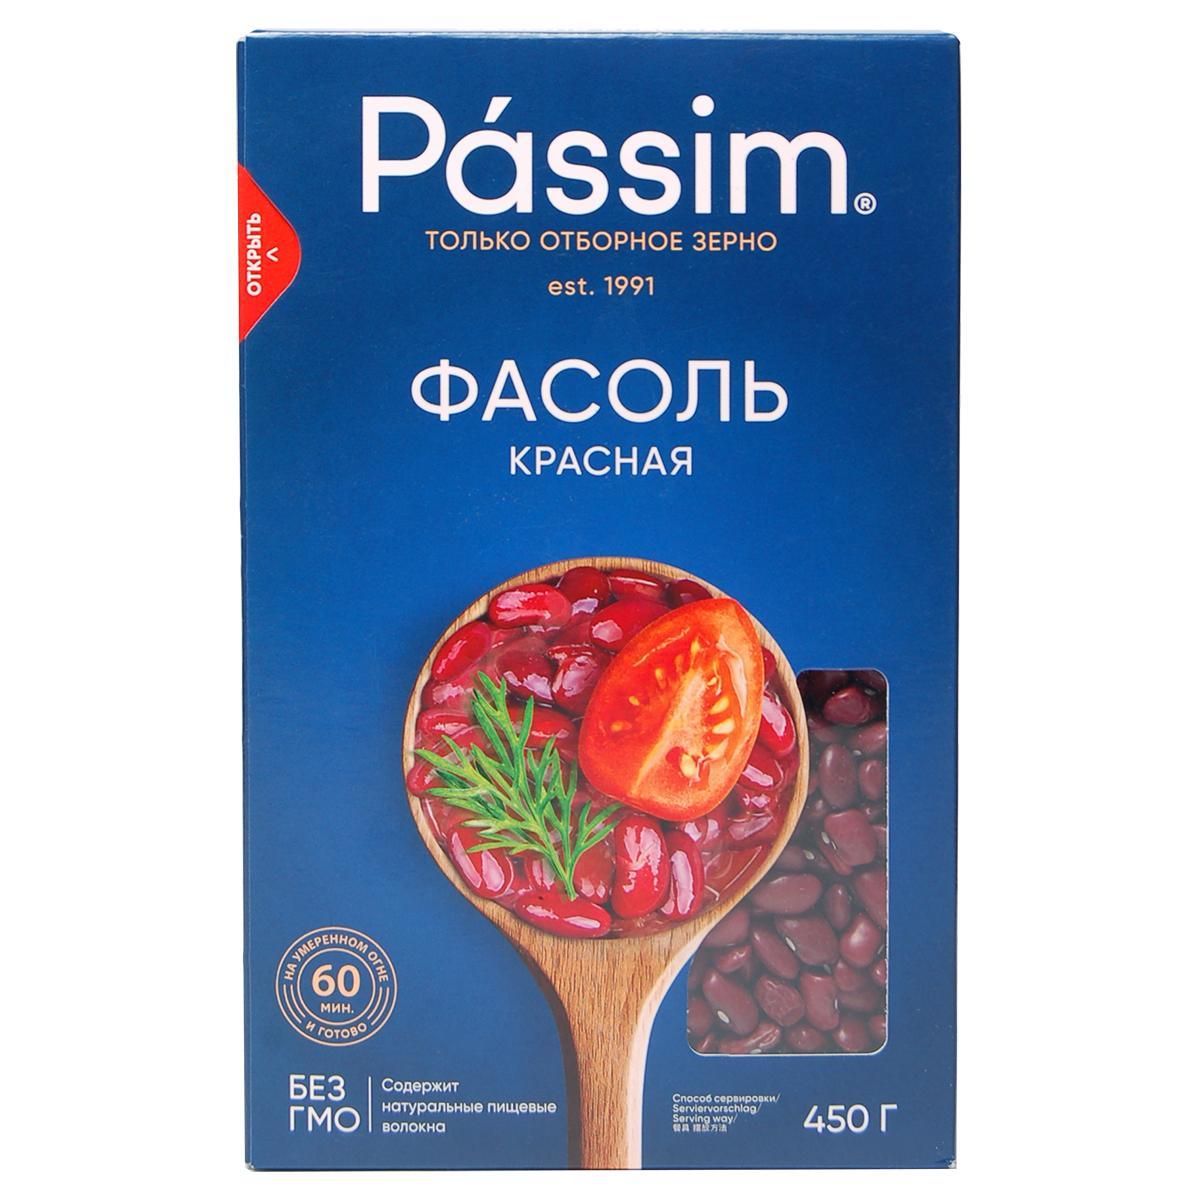 Фасоль Passim красная, 450 гр., картон